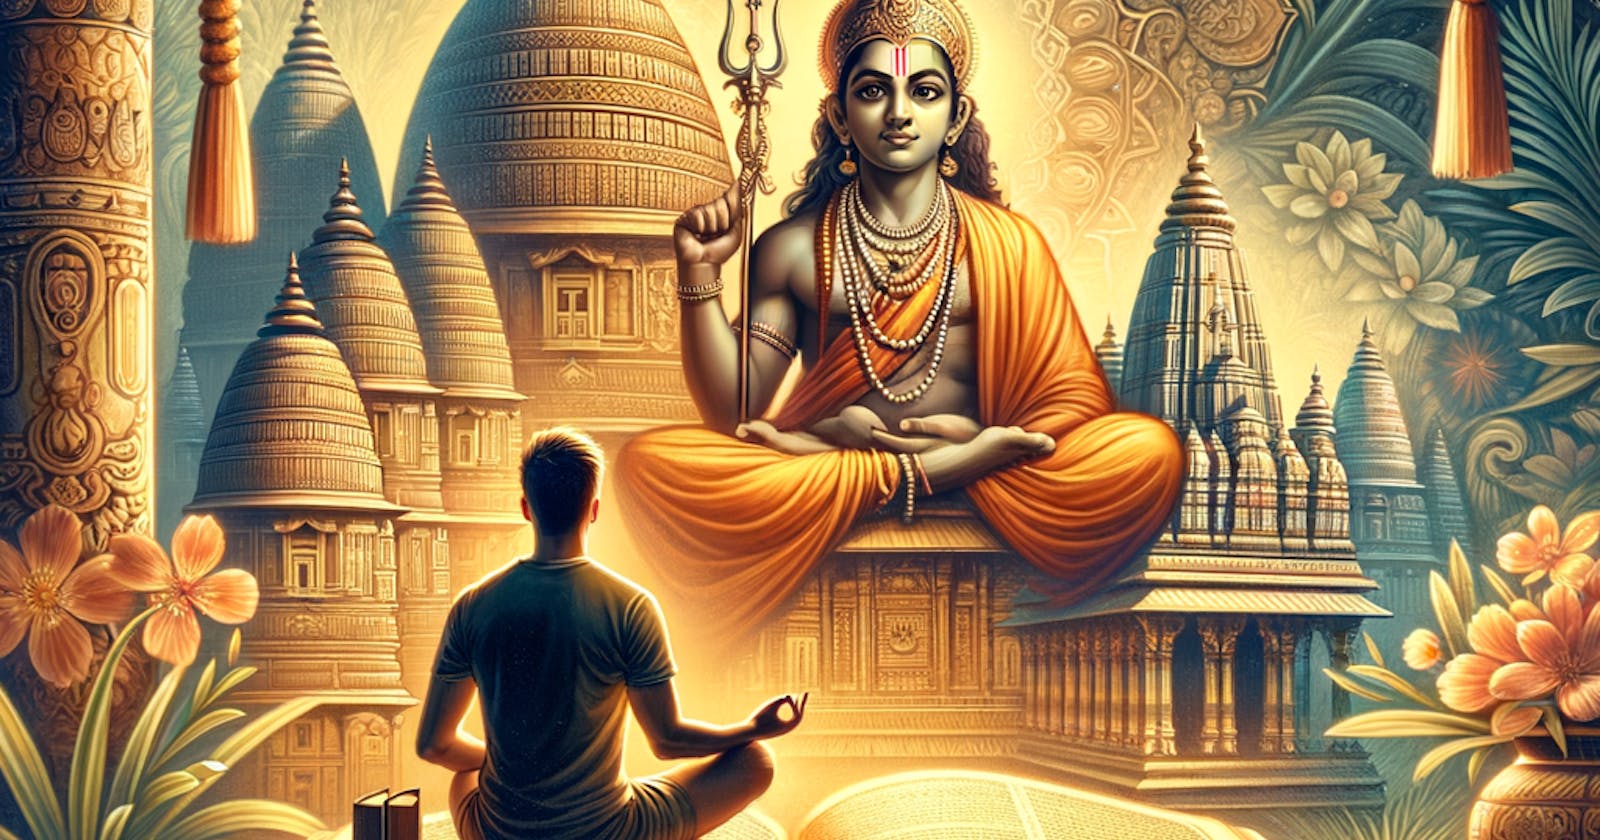 Five Pillars of Ramayana